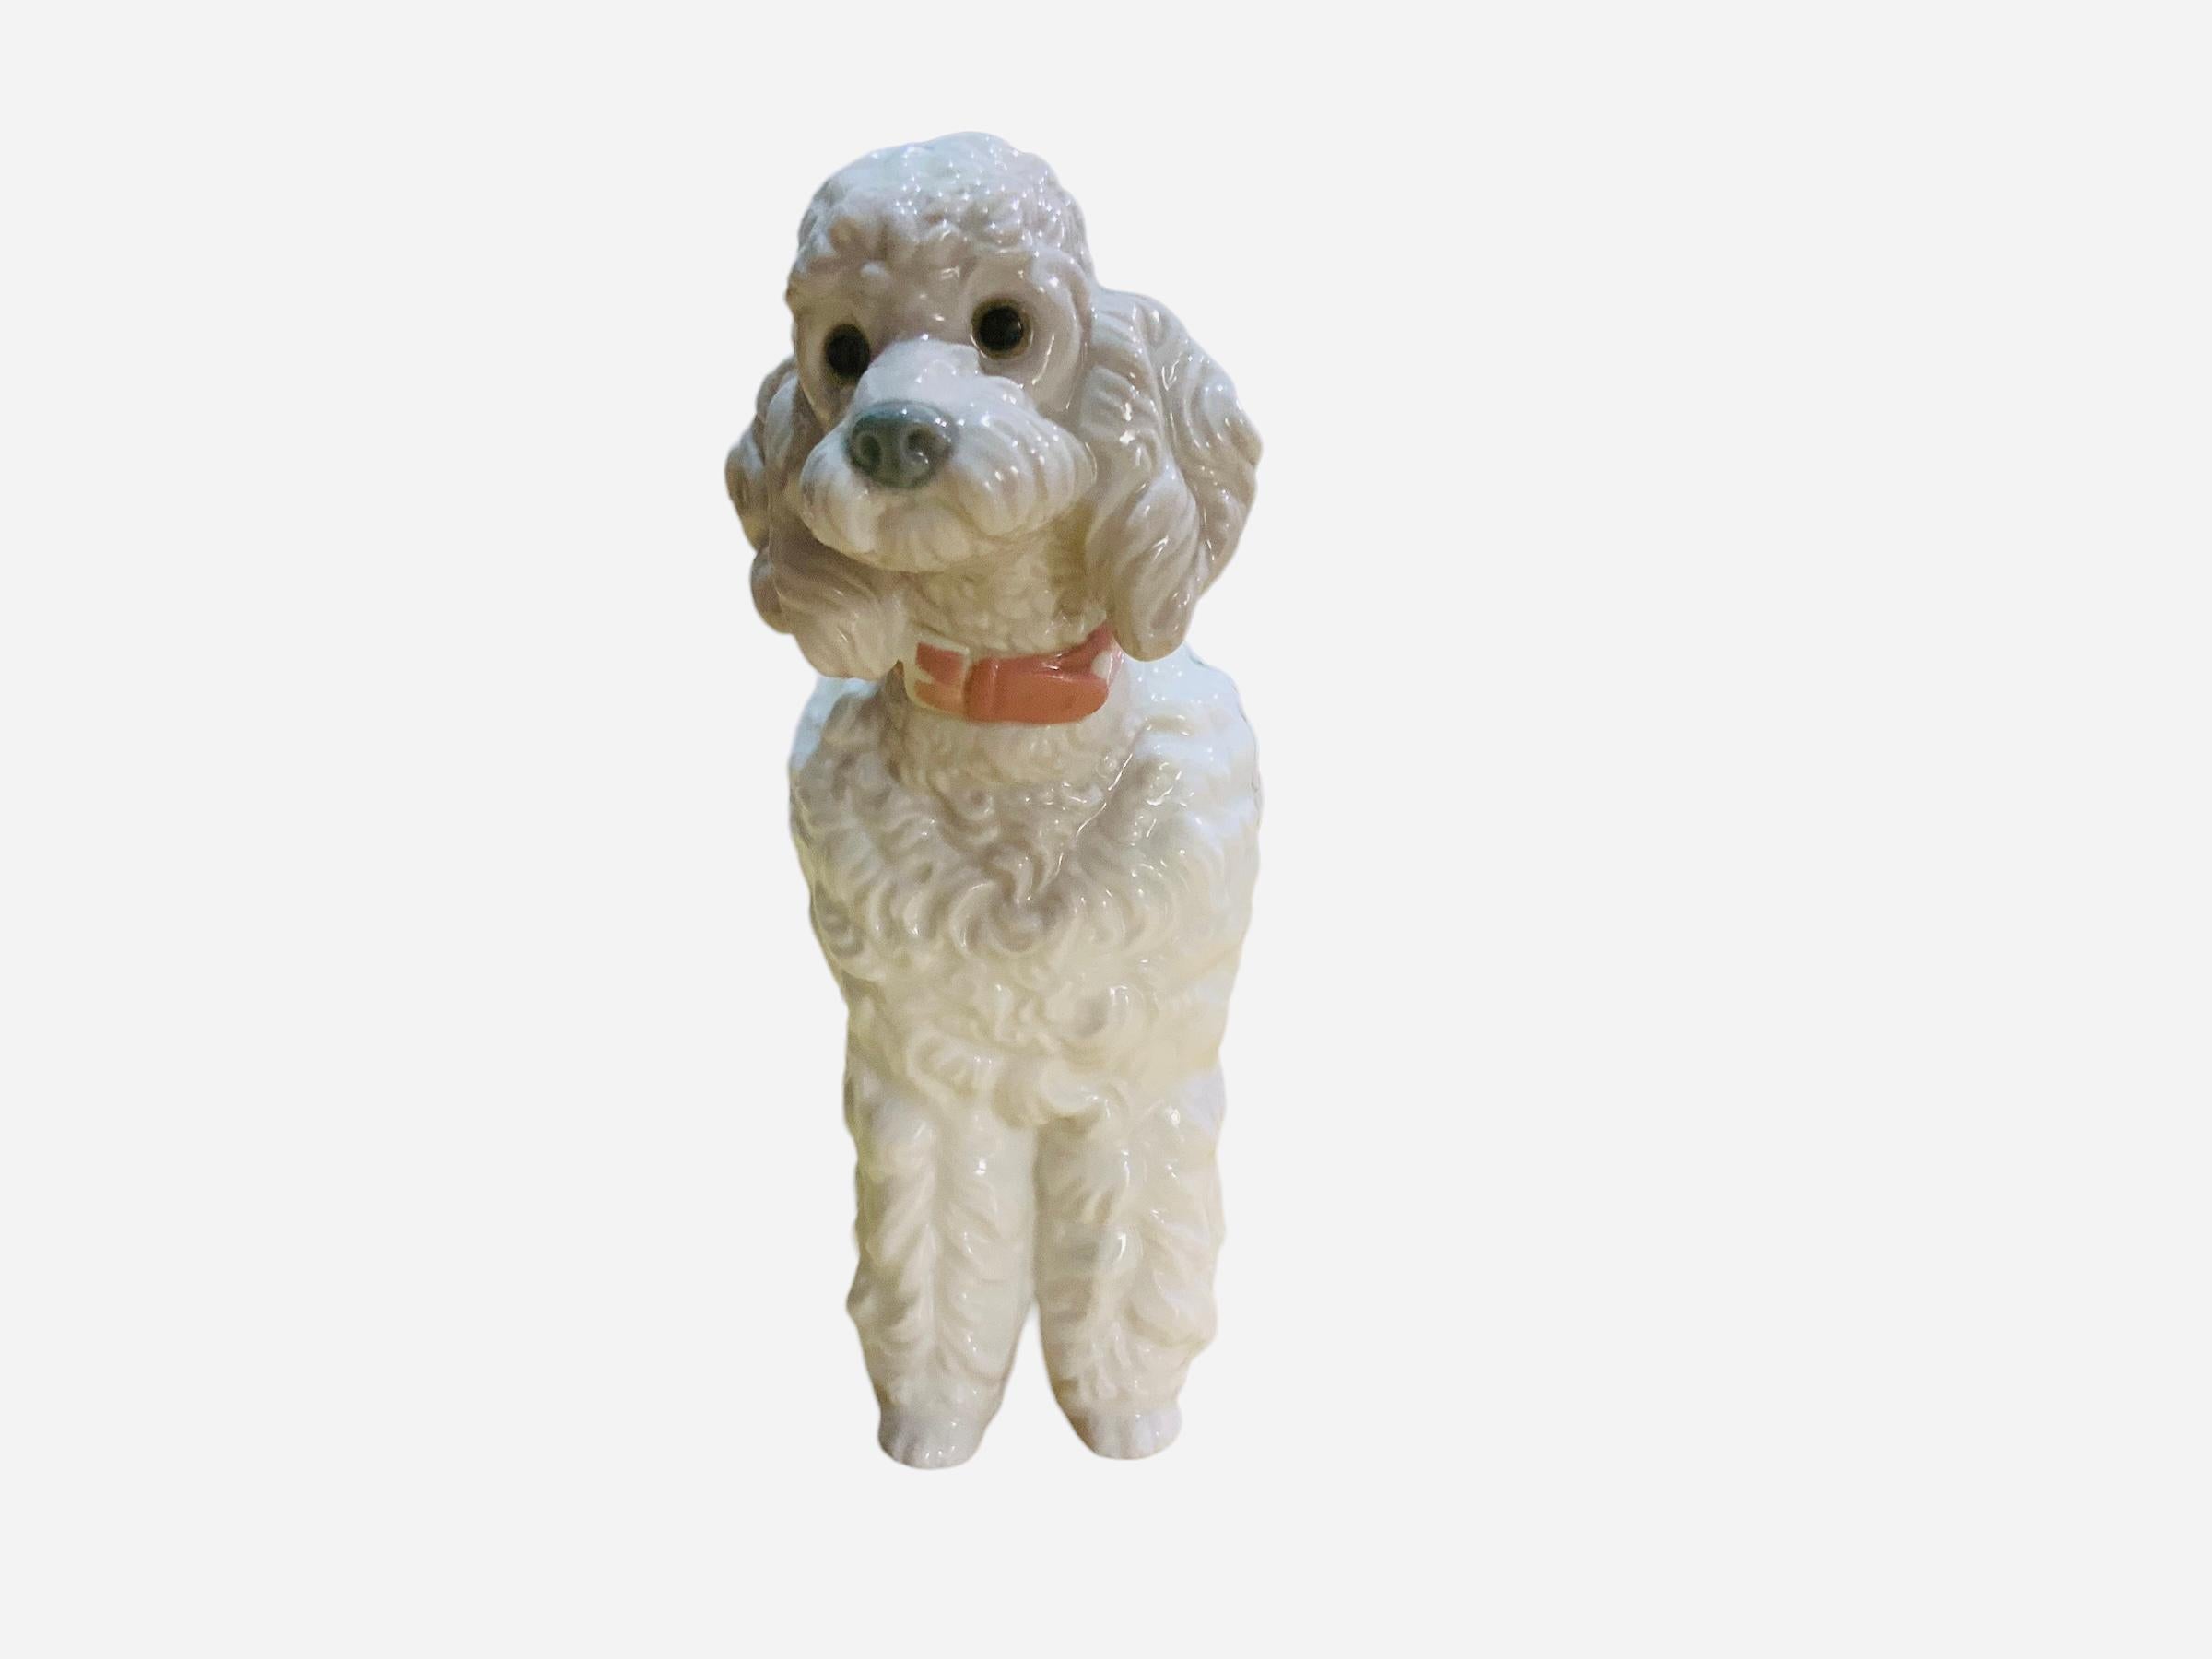 Molded Lladro Porcelain Figurine of a Poodle Dog